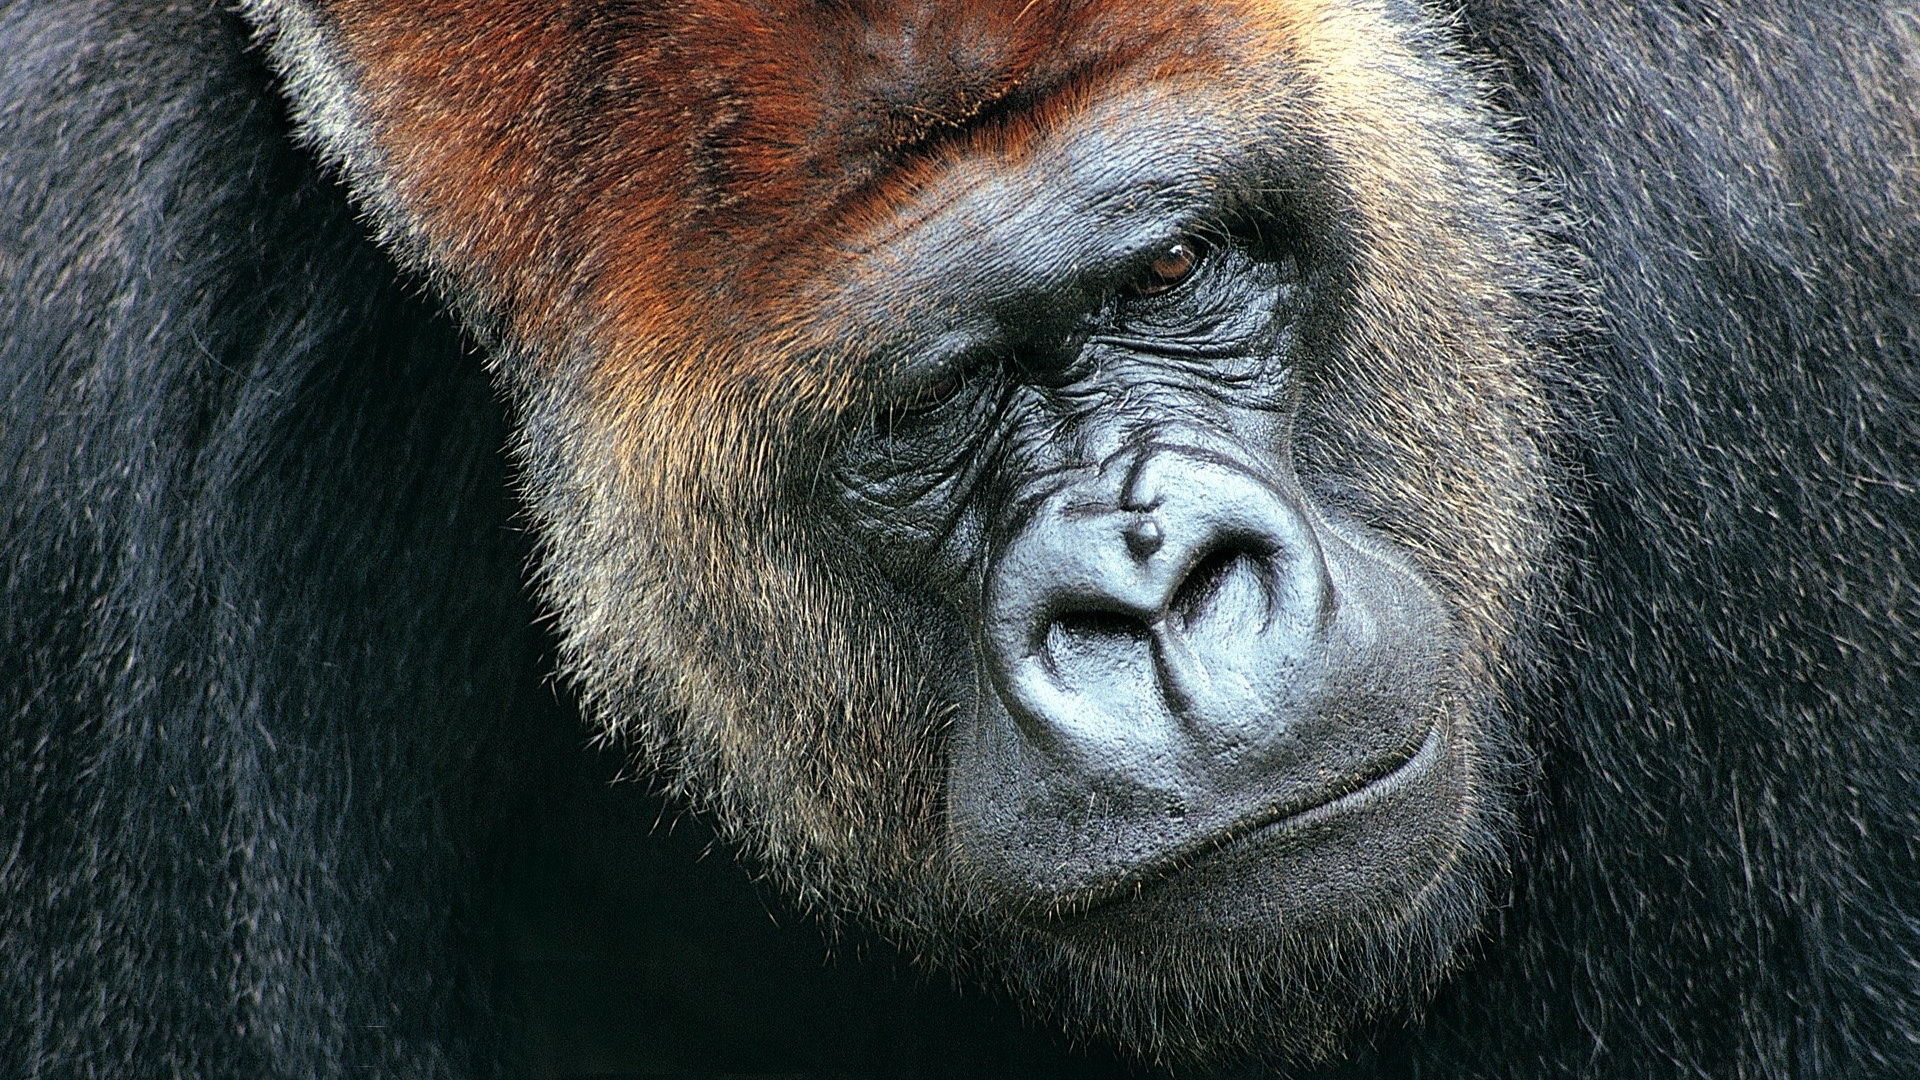 gorilla image